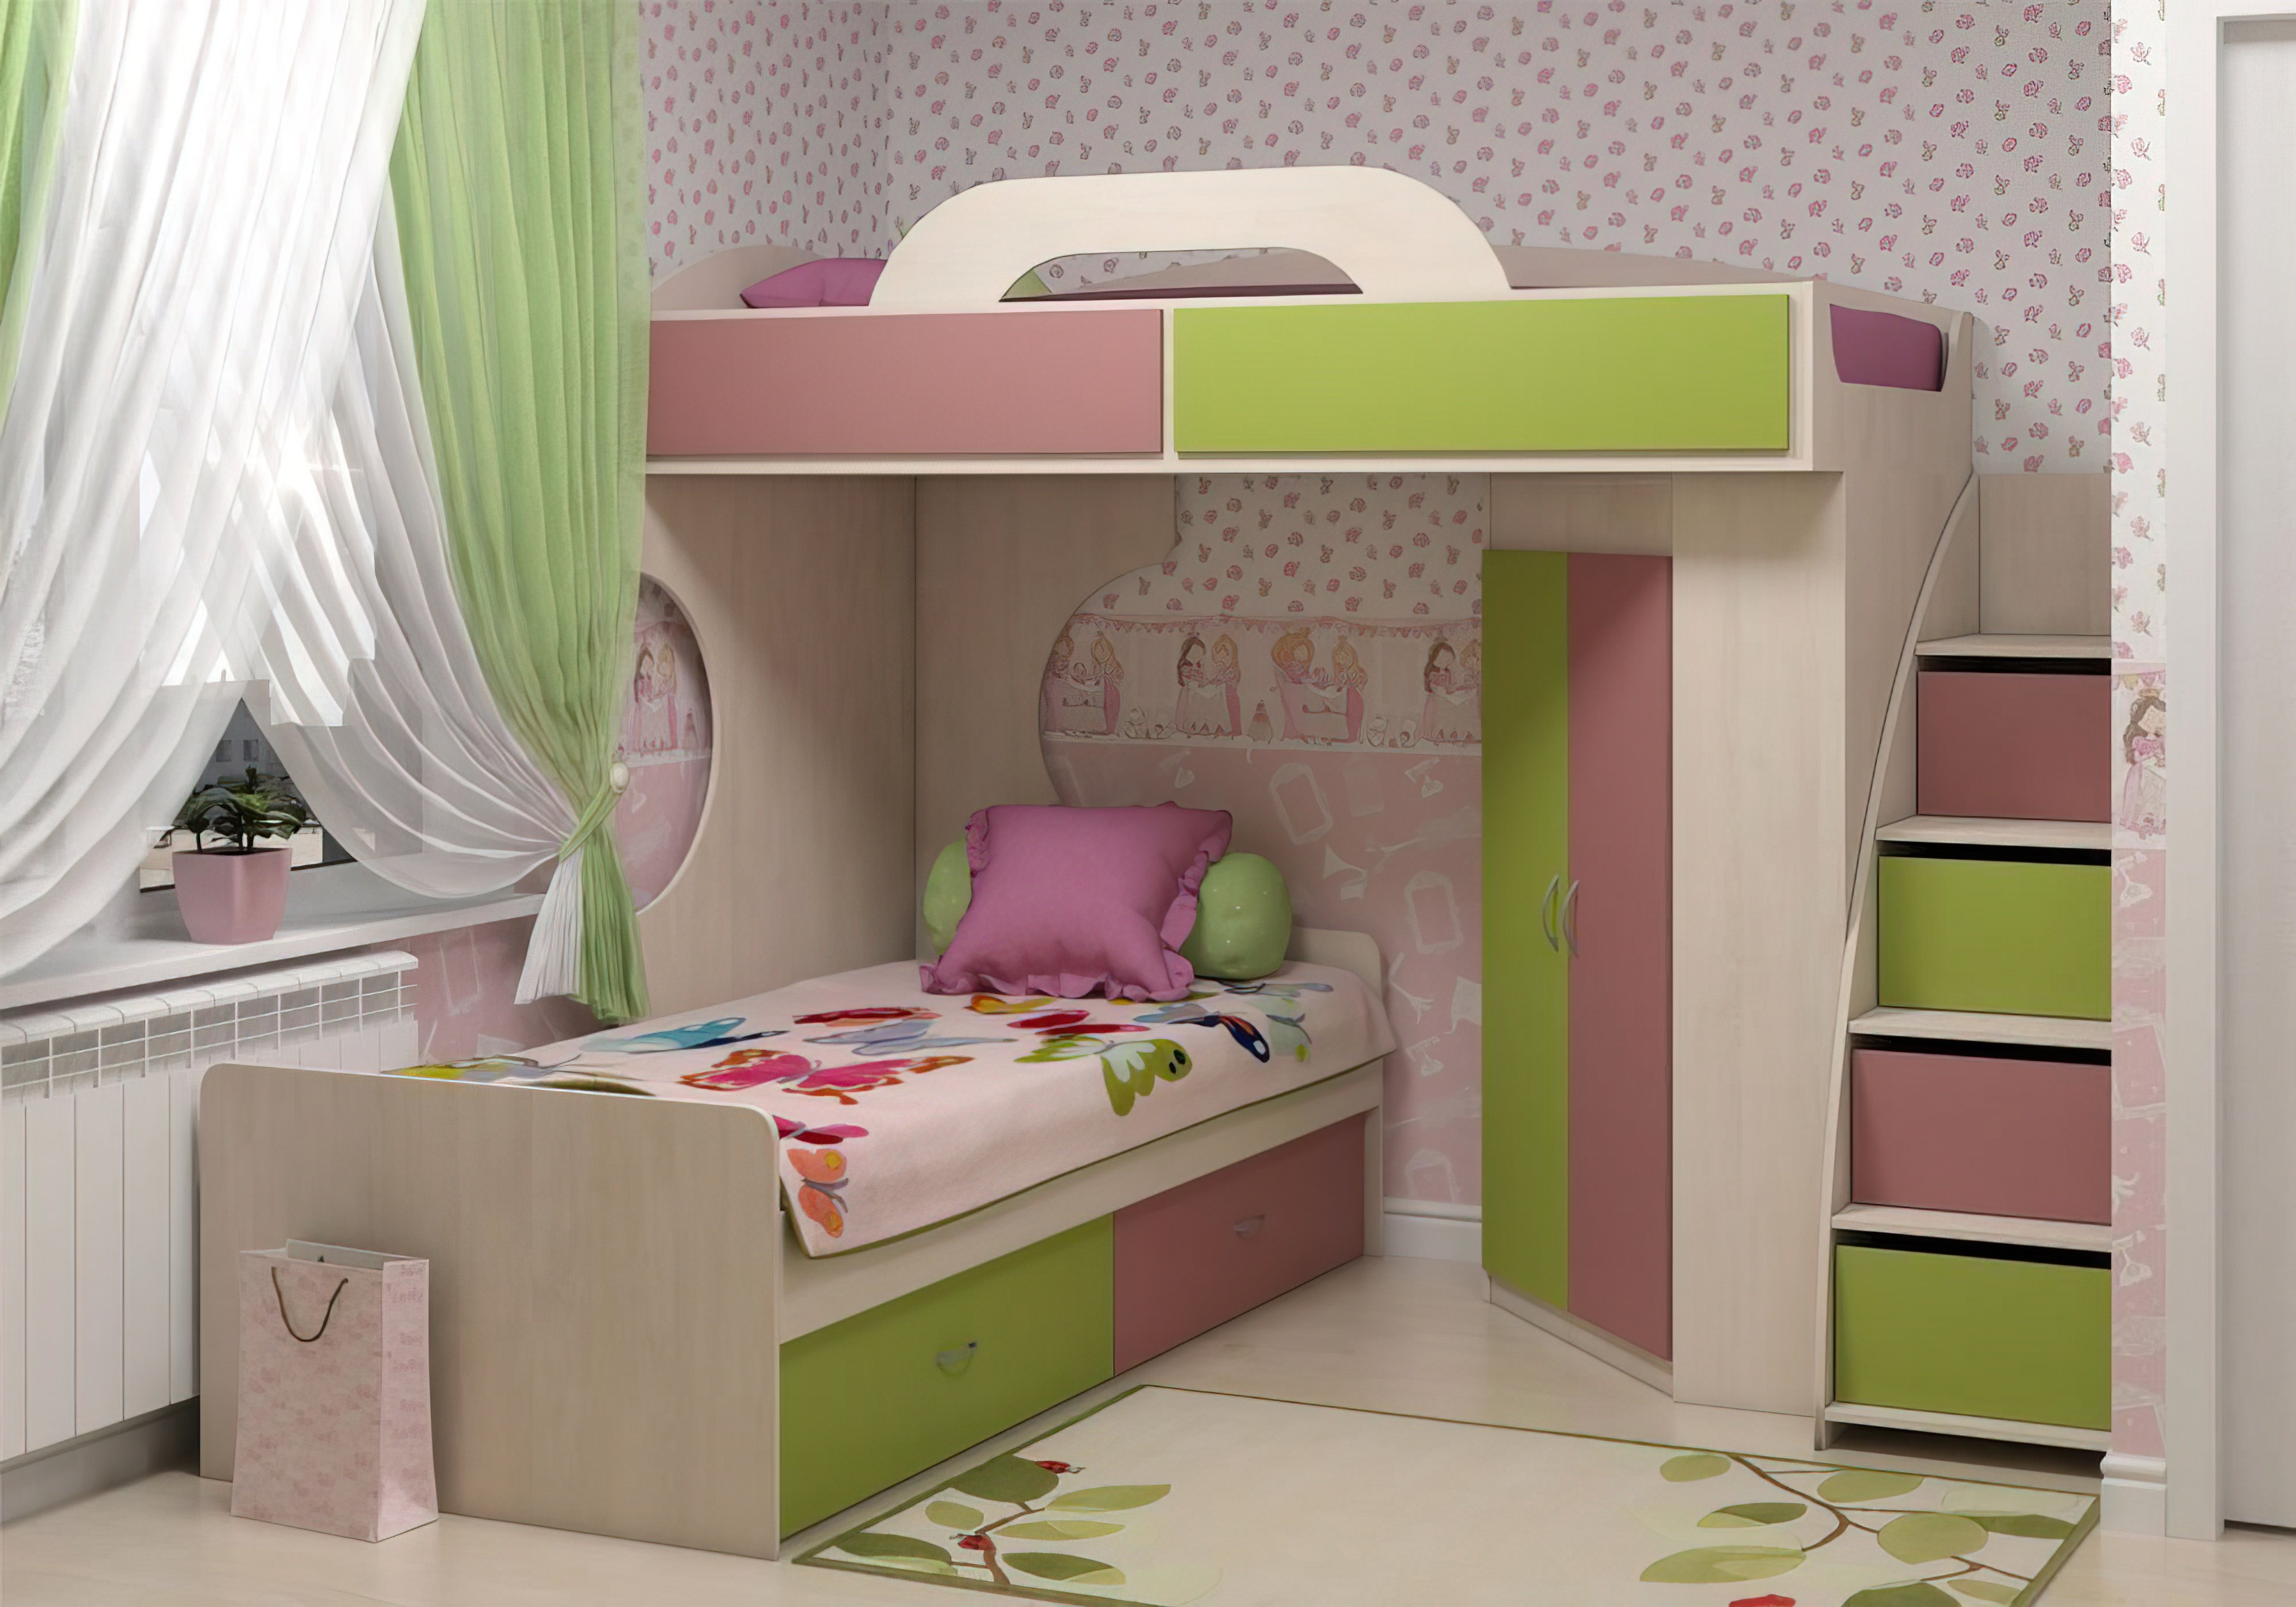  Купить Детские кровати Детская кровать "Dori pink" Аззаре